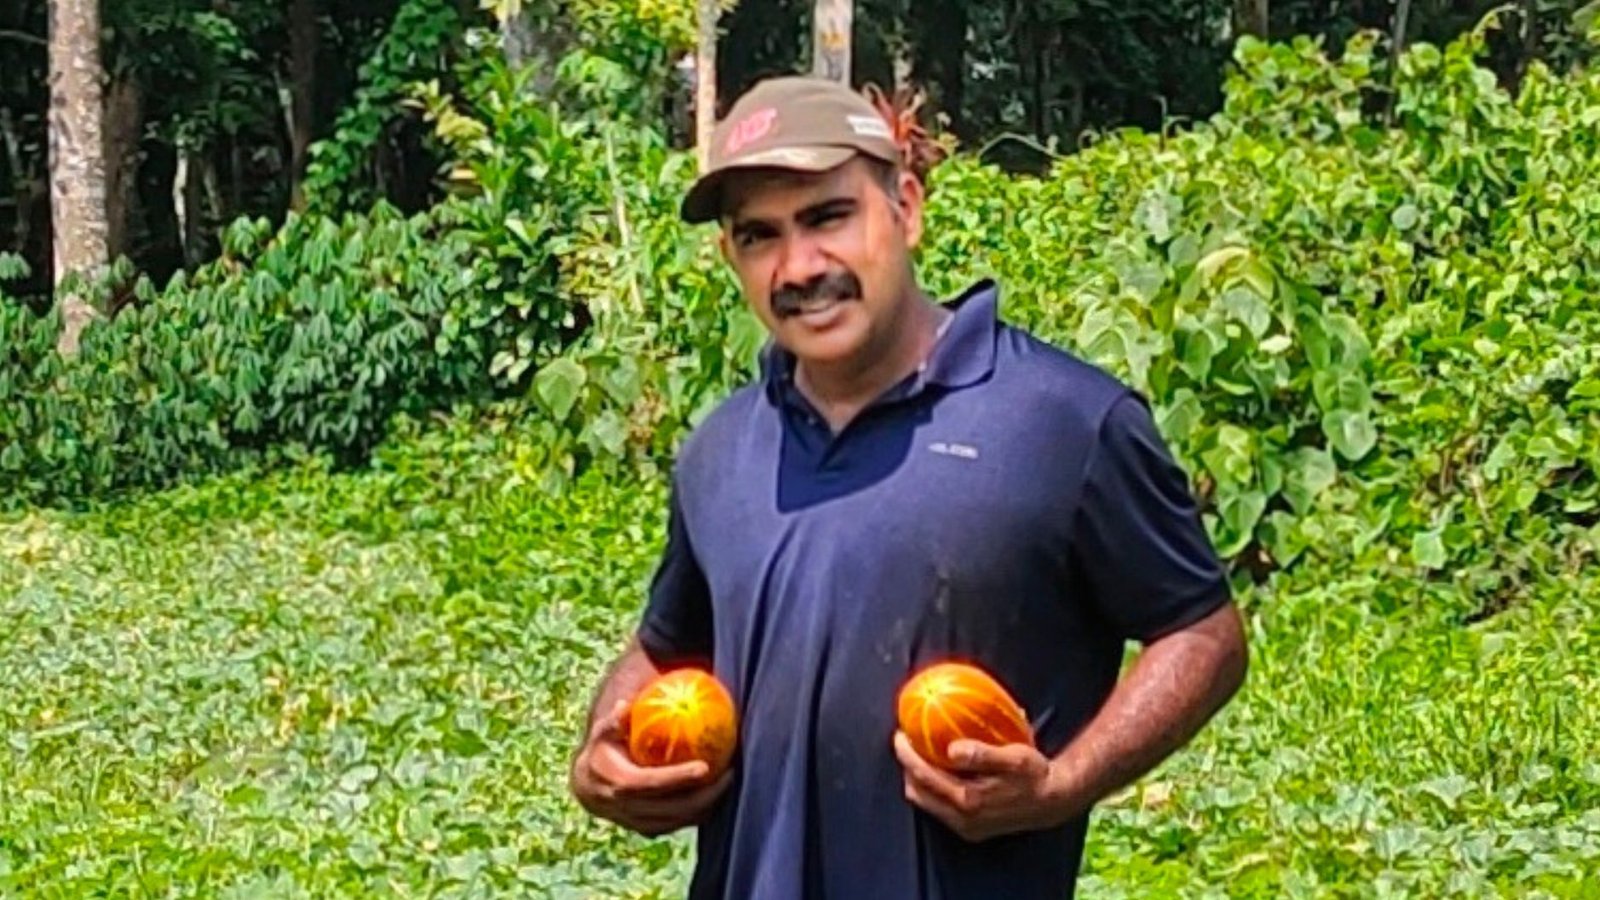 Ajith S at his farm in Pala, Kerala